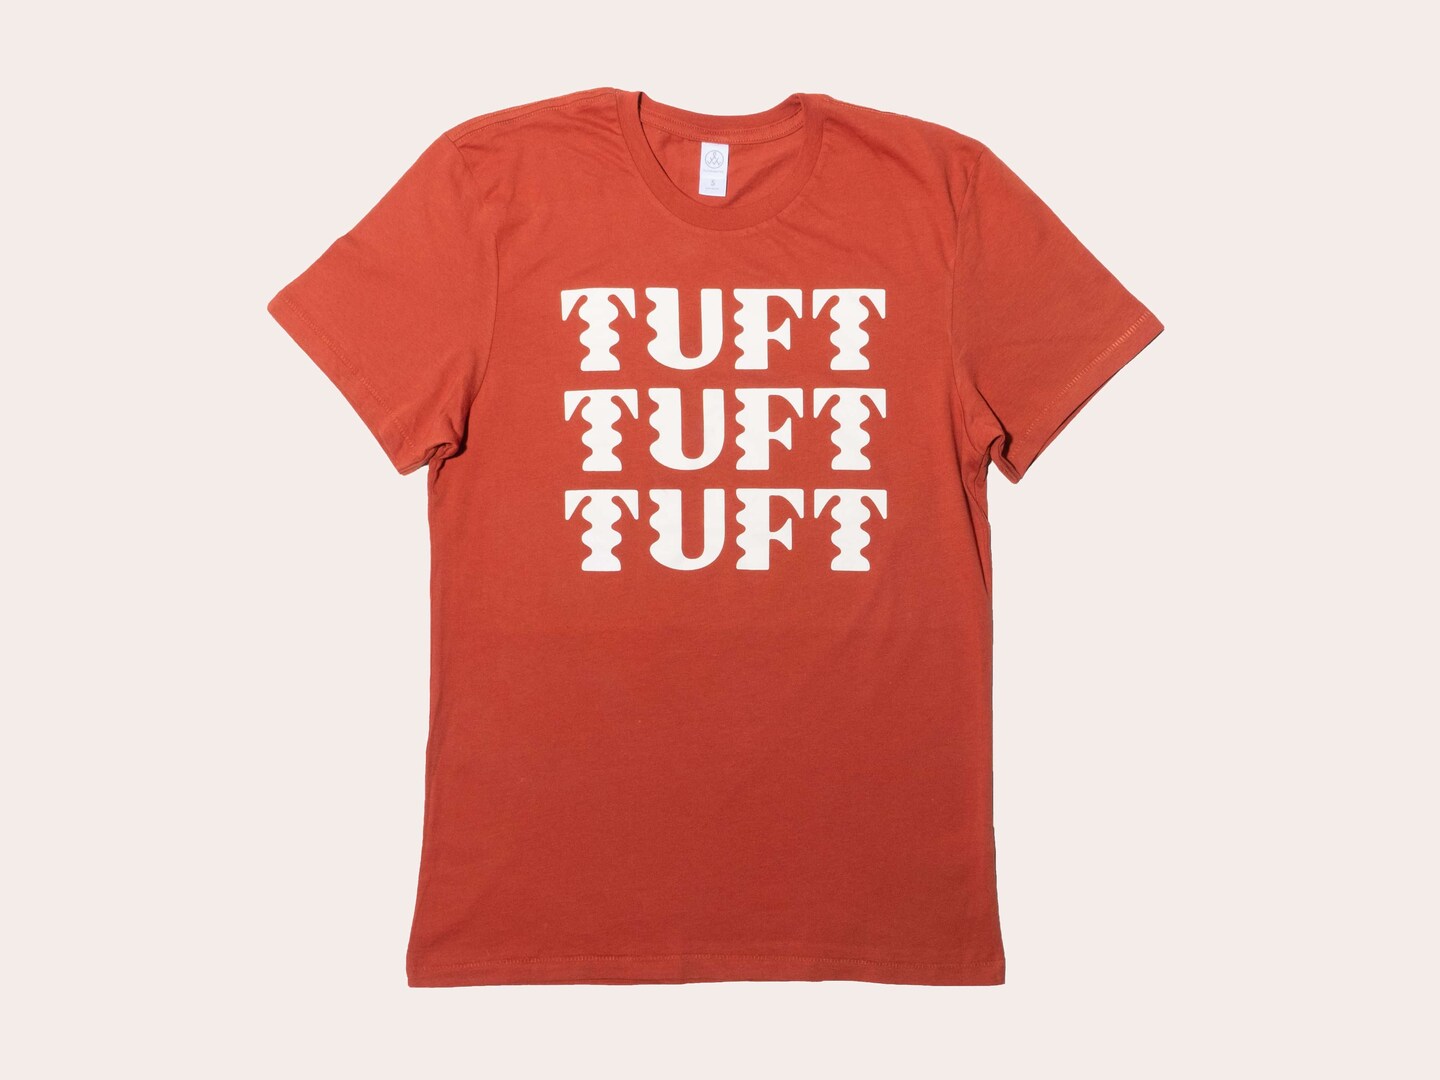 Rust Tuft Tuft Tuft Tee (Classic fit)